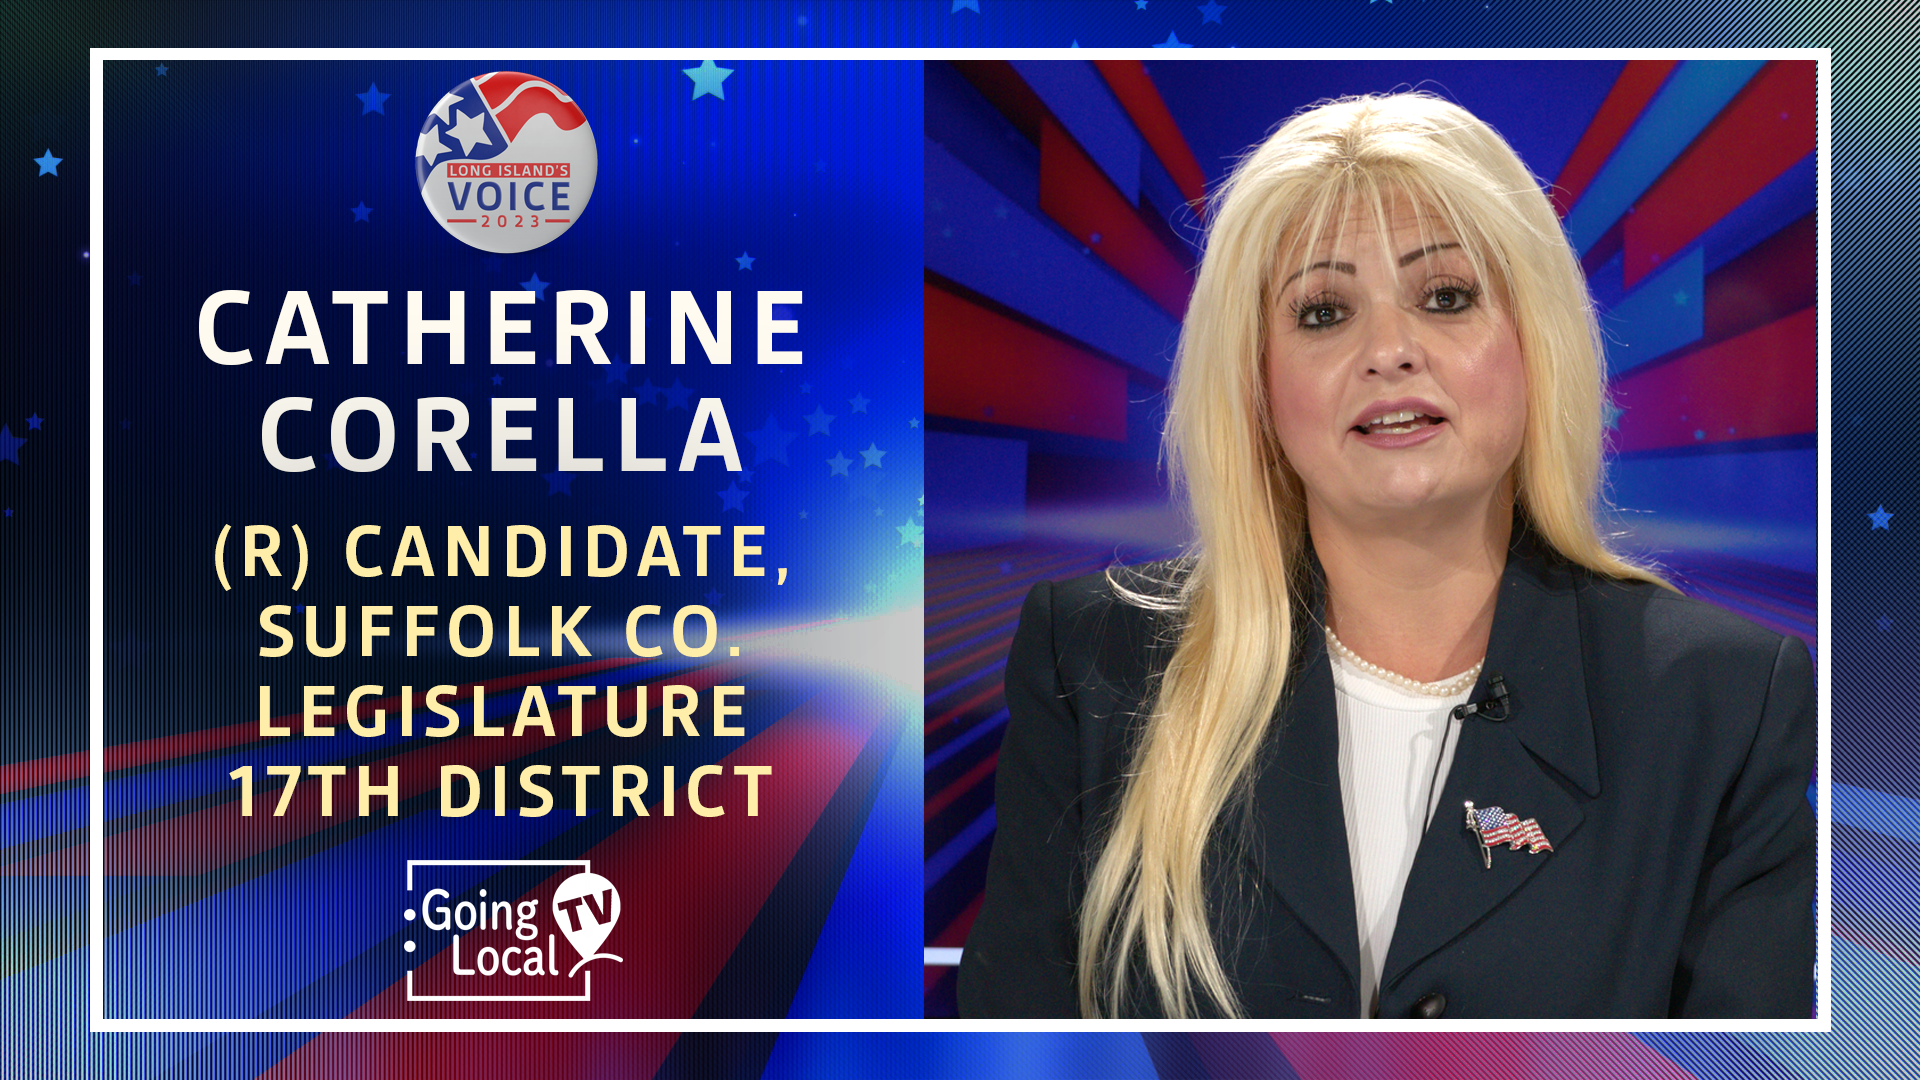 Catherine Corella (R) - Candidate, Suffolk County Legislature, 17th District